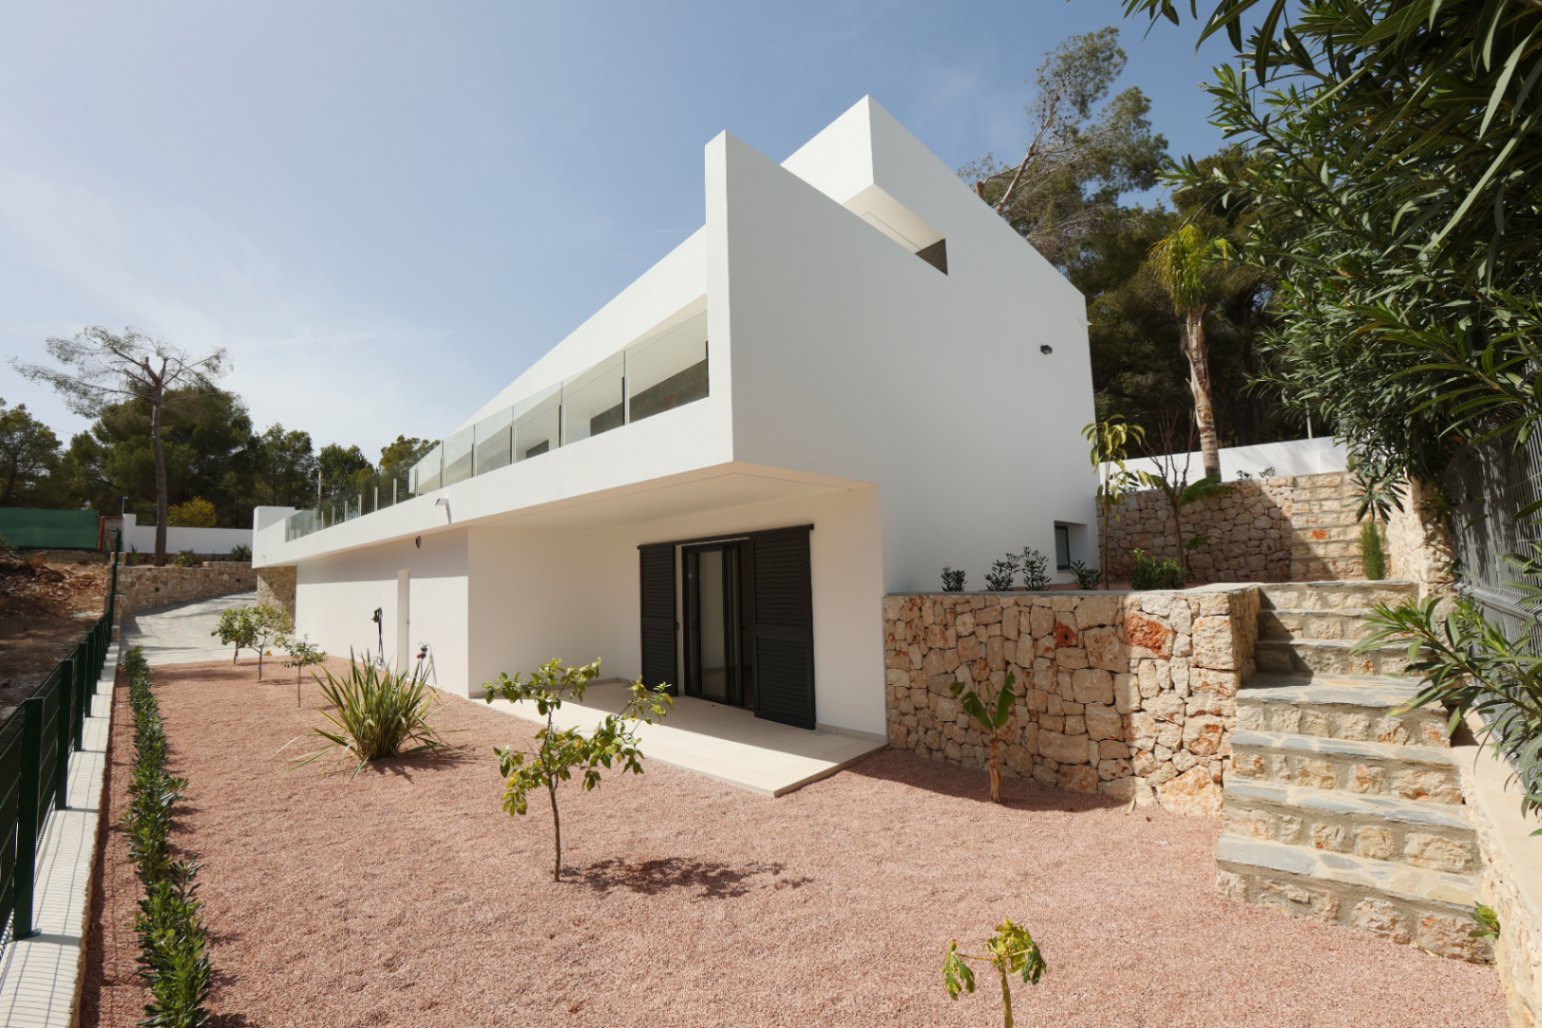 Découvrez cette superbe villa moderne récemment achevée à Benissa